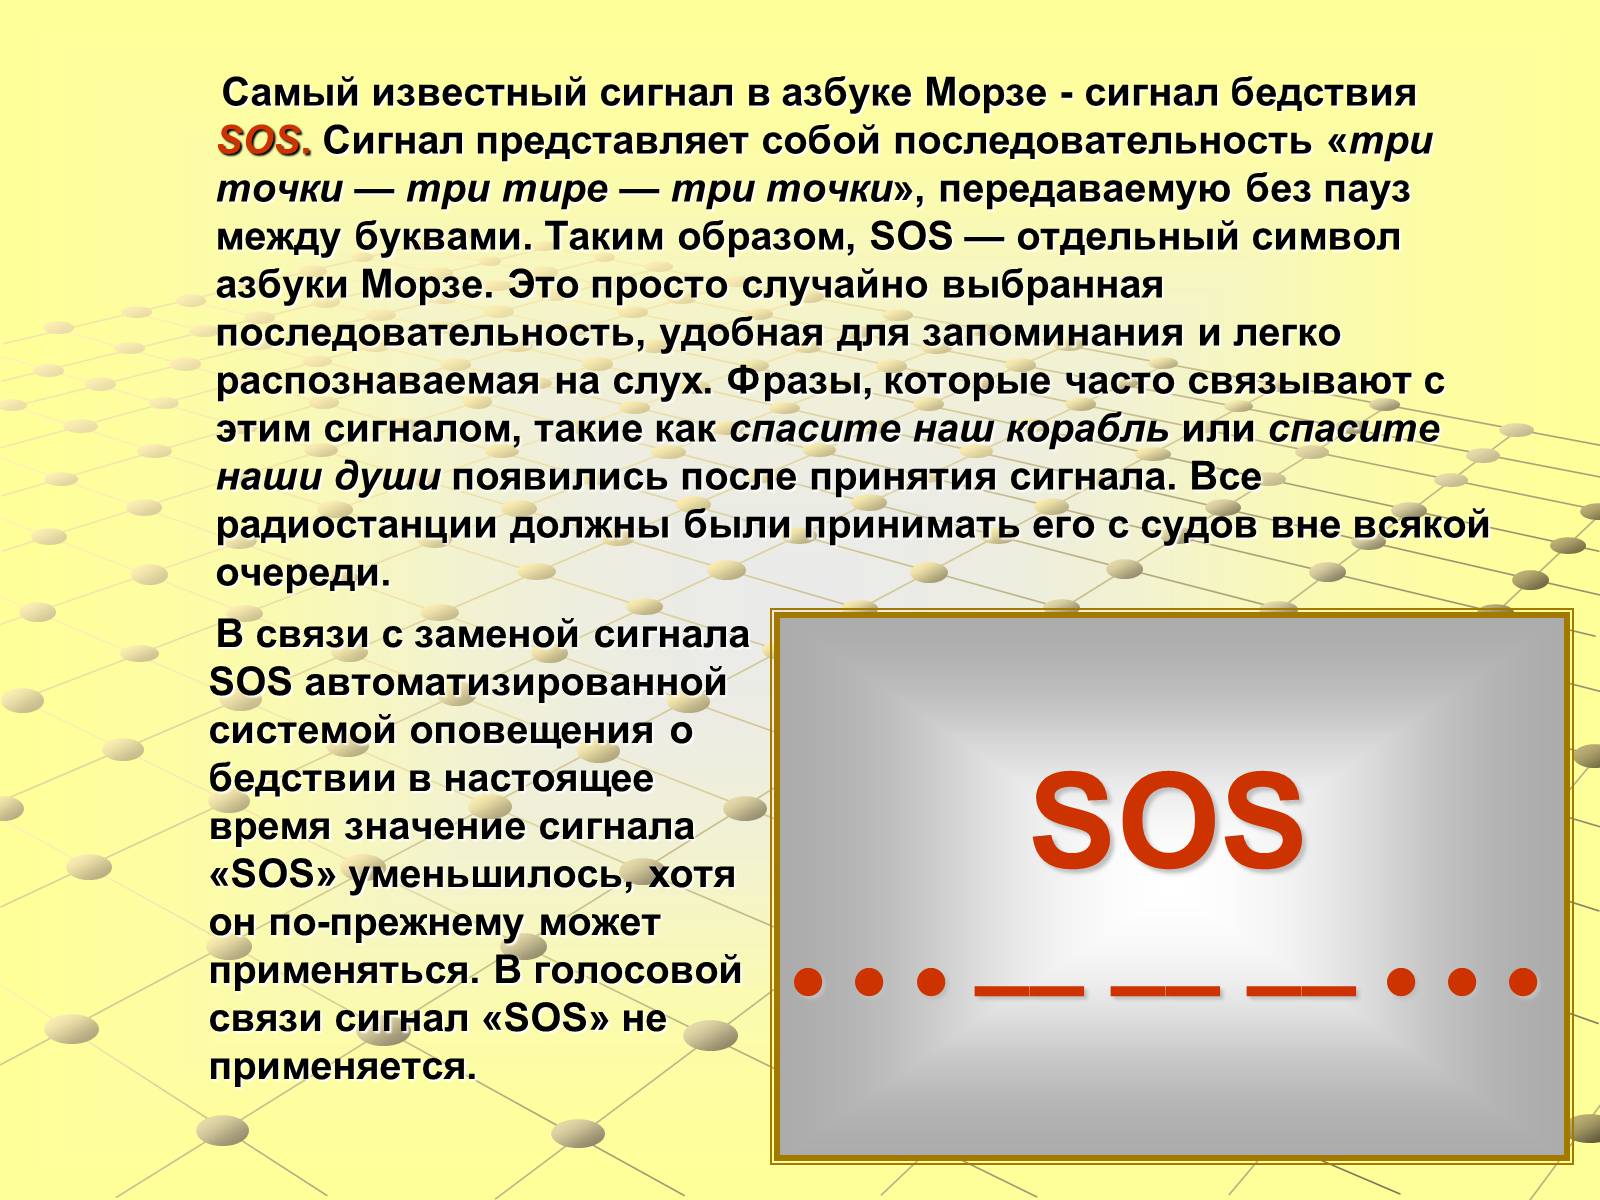 Что значит сос. Сигнал сос. Сигнал SOS Азбука Морзе. SOS сигнал бедствия Азбука Морзе. Как расшифровывается сигнал SOS.